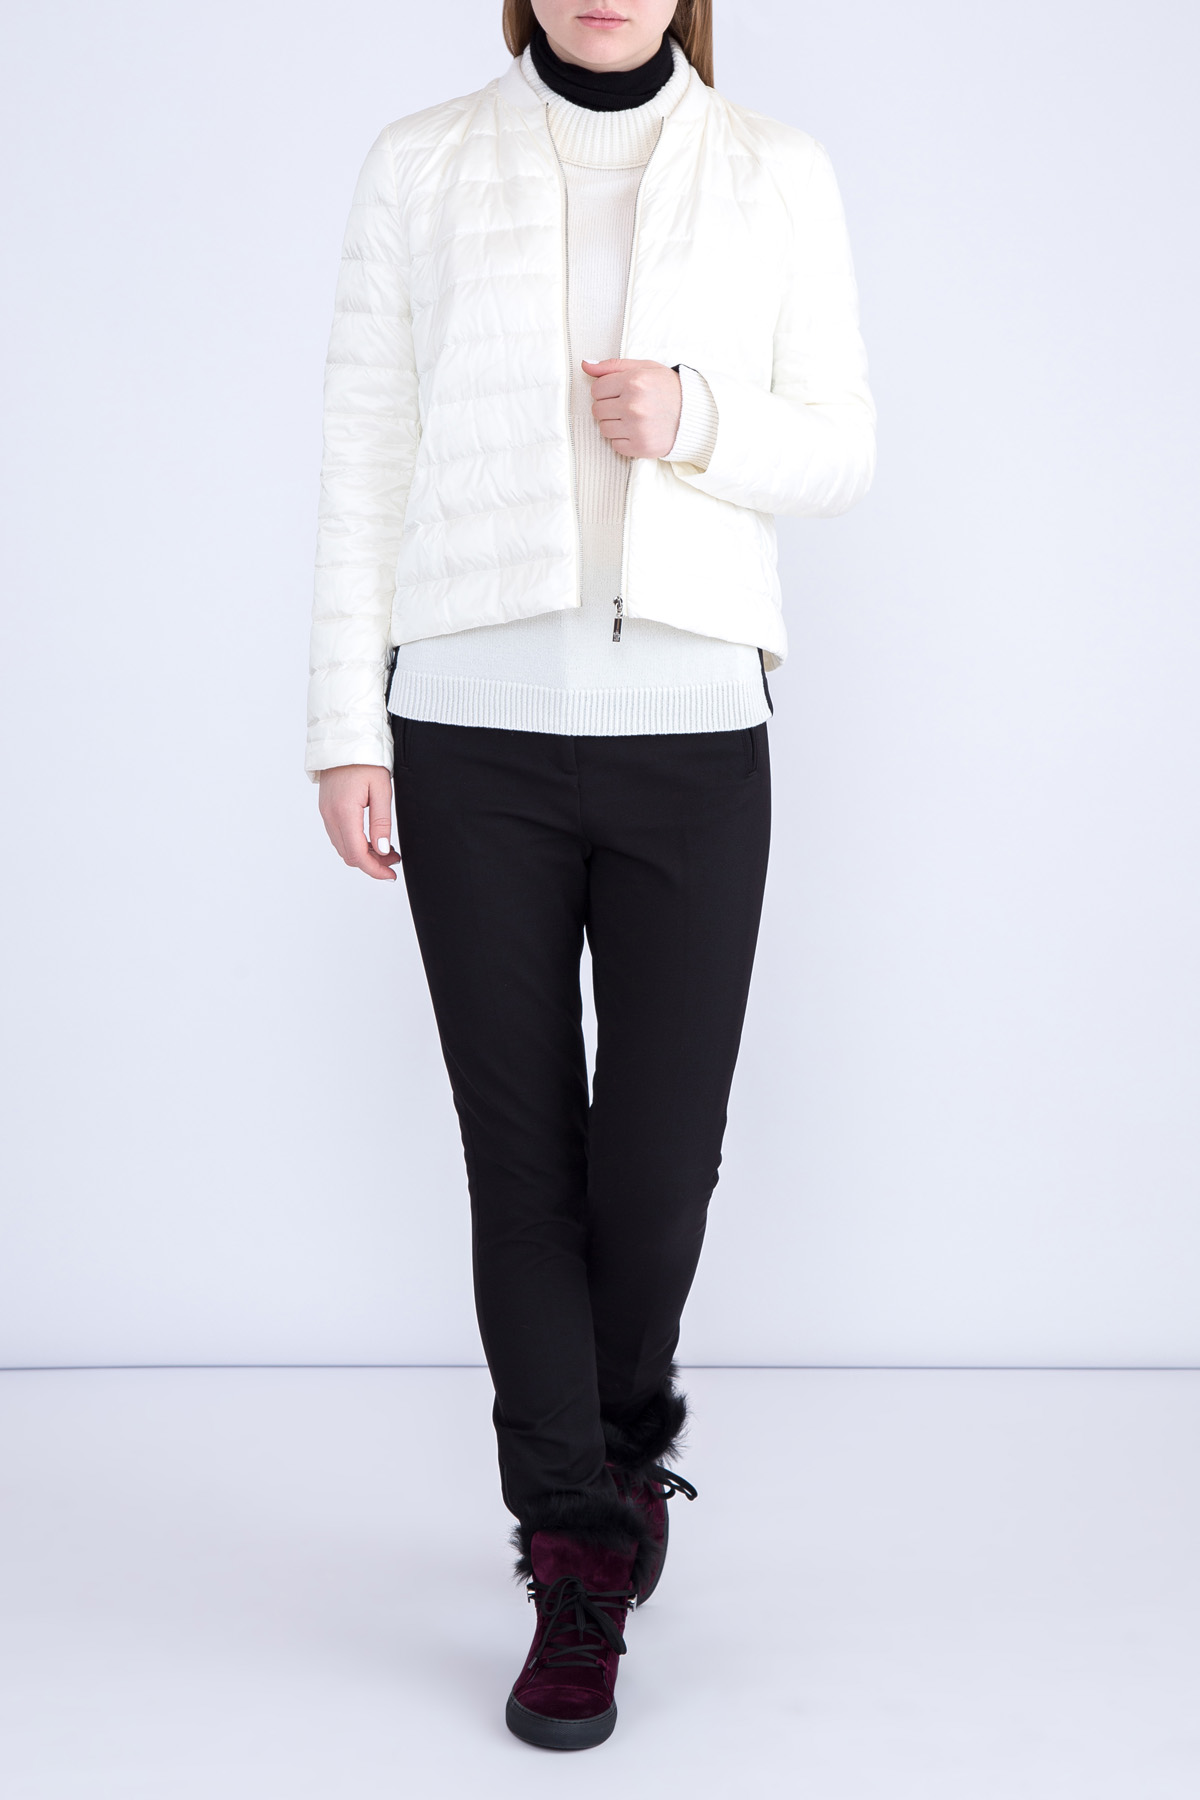 Пальто «Ontario» из ткани букле с внутренней ультра-легкой курткой MONCLER, цвет черно-белый, размер 40 - фото 5